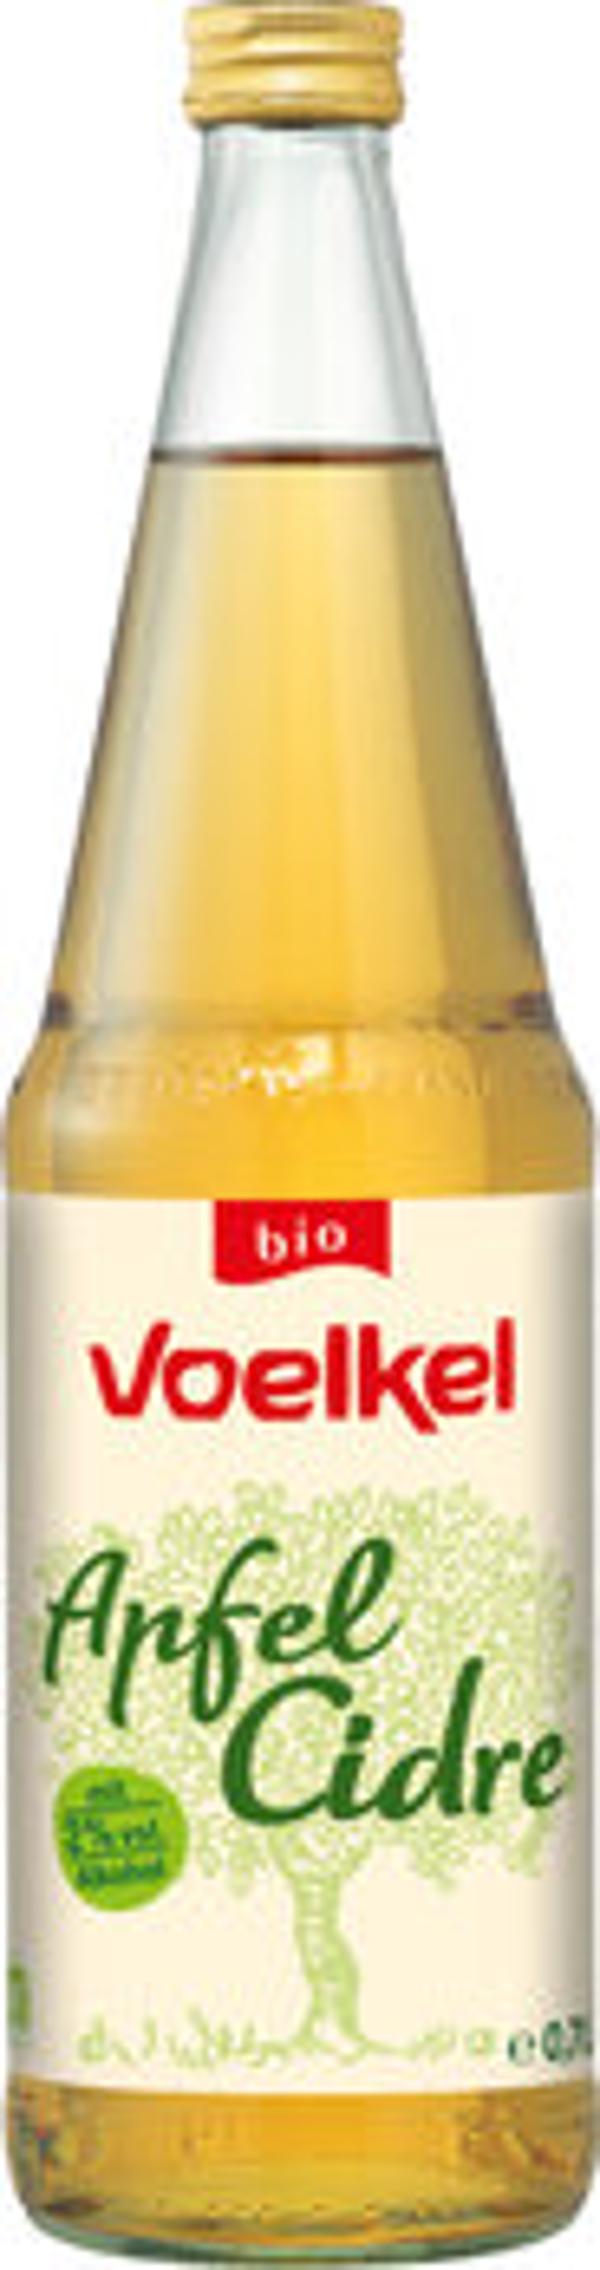 Produktfoto zu Voelkel Apfel Cidre 0,7L